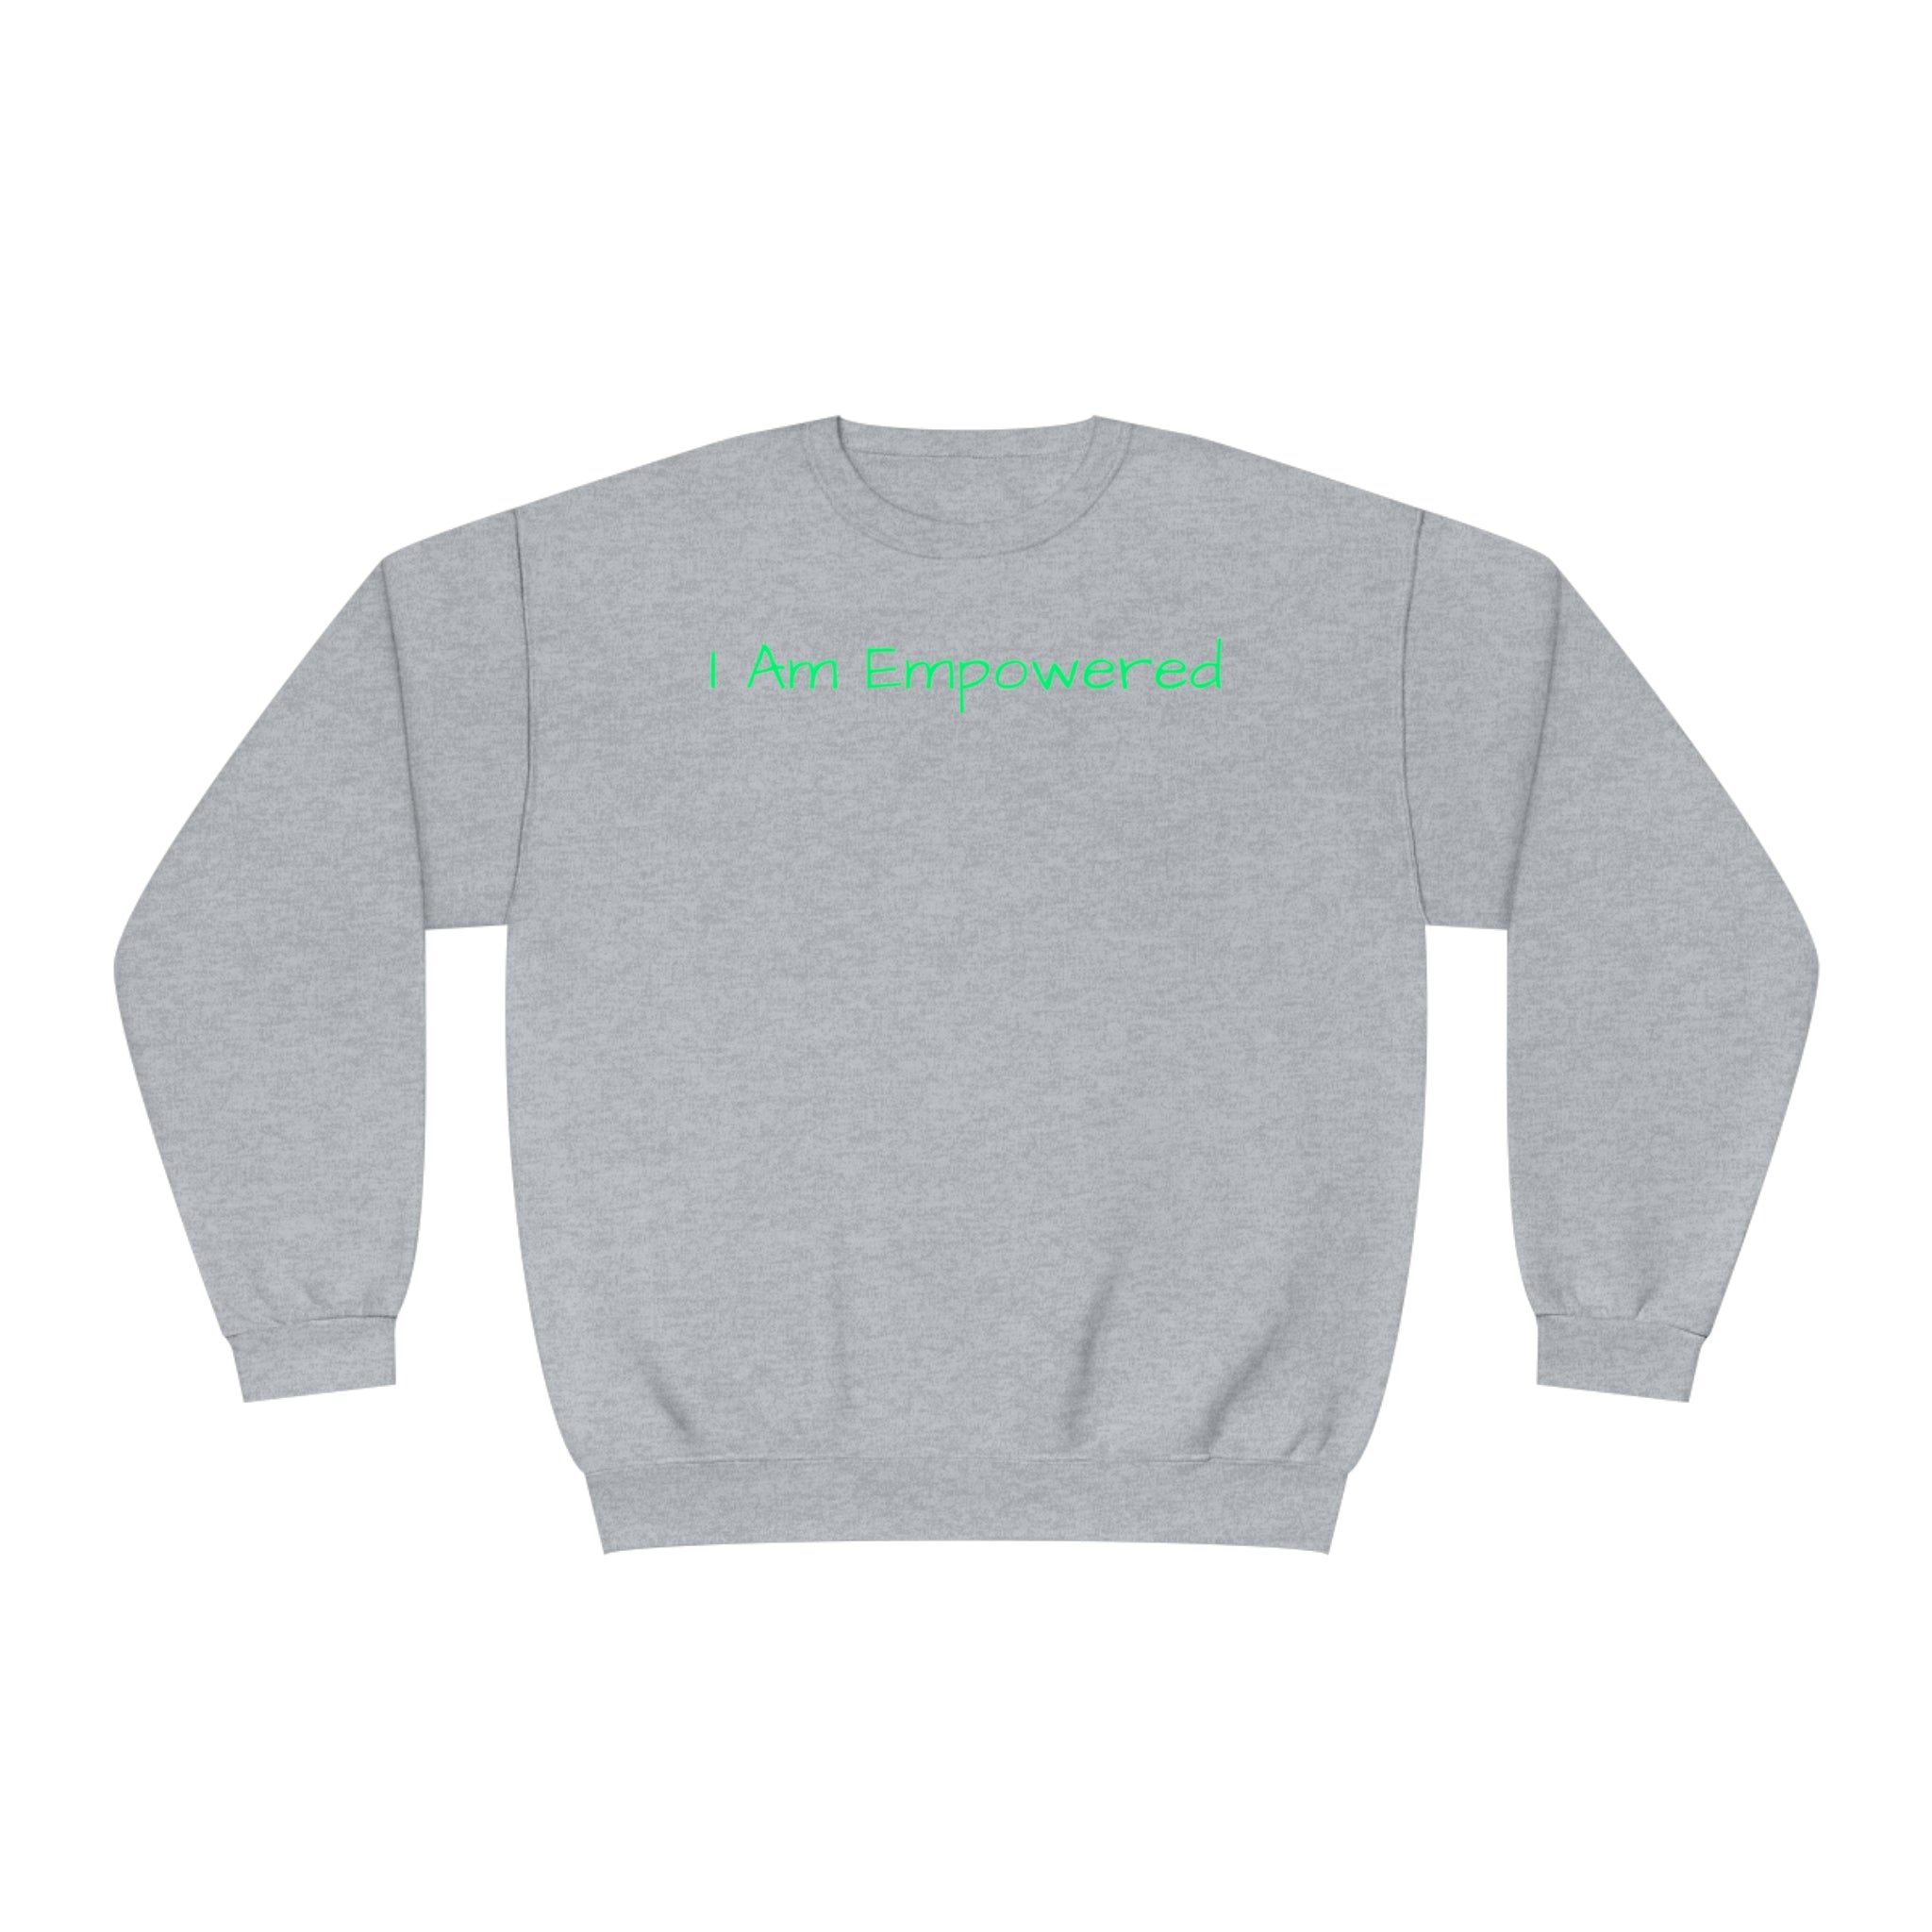 I Am Empowered Fleece Sweatshirt - Style Guaranteed Sandstone Comfy Sweater Cozy Sweatshirt Crewneck Sweatshirt Fleece Pullover Graphic Sweatshirt Men's Sweatshirt Streatwear Sweatshirt Warm Outerwear Women's Sweatshirt Sweatshirt 14346960402833840507_2048 Printify